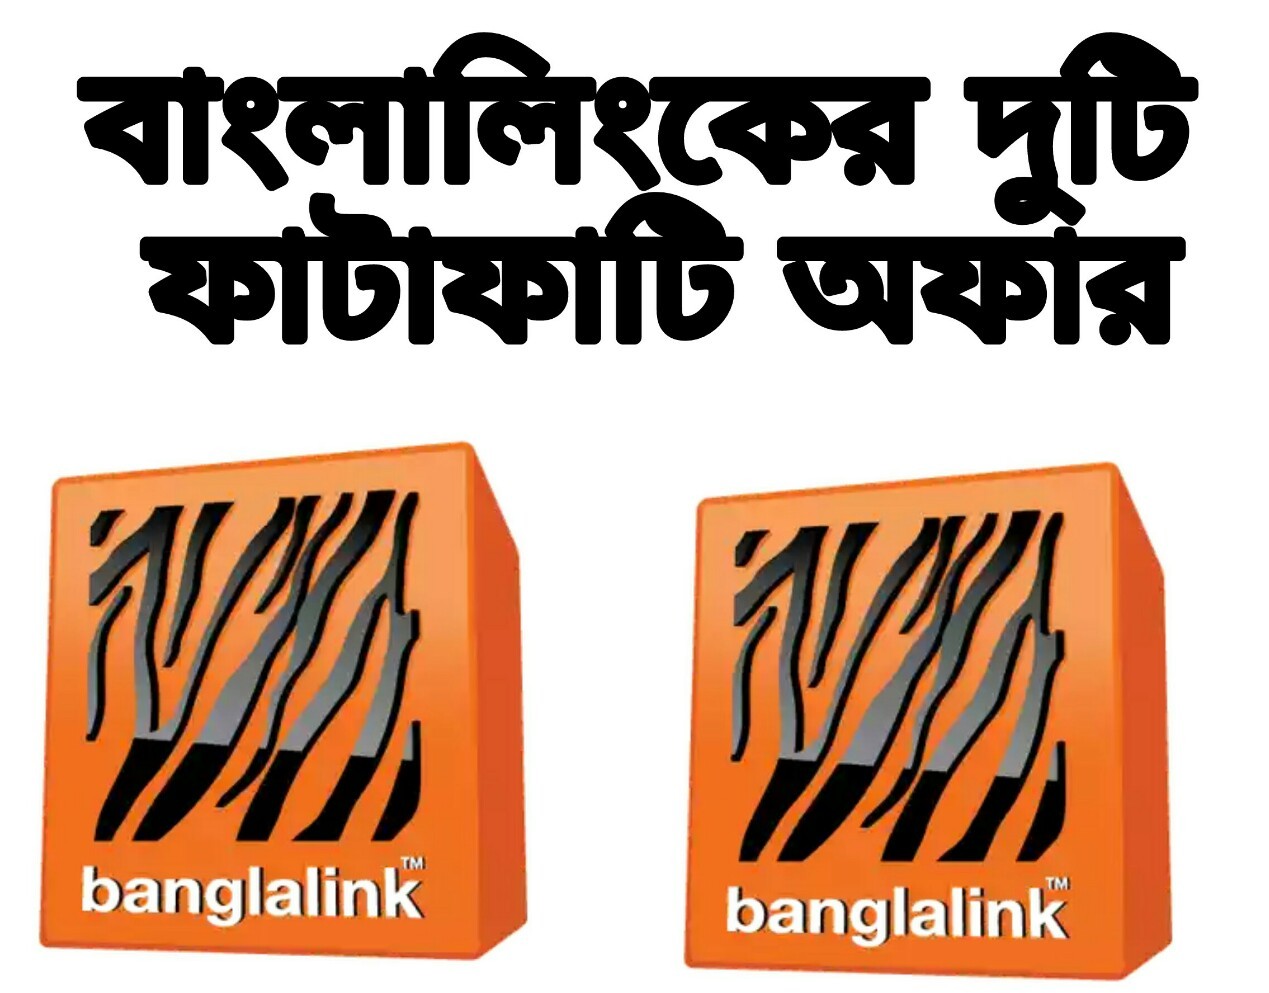 বাংলালিংক অফার,বাংলালিংক অফার জানতে,বাংলালিংক অফার এমবি,আজকের বাংলালিংক অফার,5 টাকায় ১ জিবি বাংলালিংক,২৫ টাকায় ১ জিবি বাংলালিংক,বাংলালিংক ৫ টাকায় ১ জিবি,banglalink offer internet,my banglalink offer,my banglalink offer,